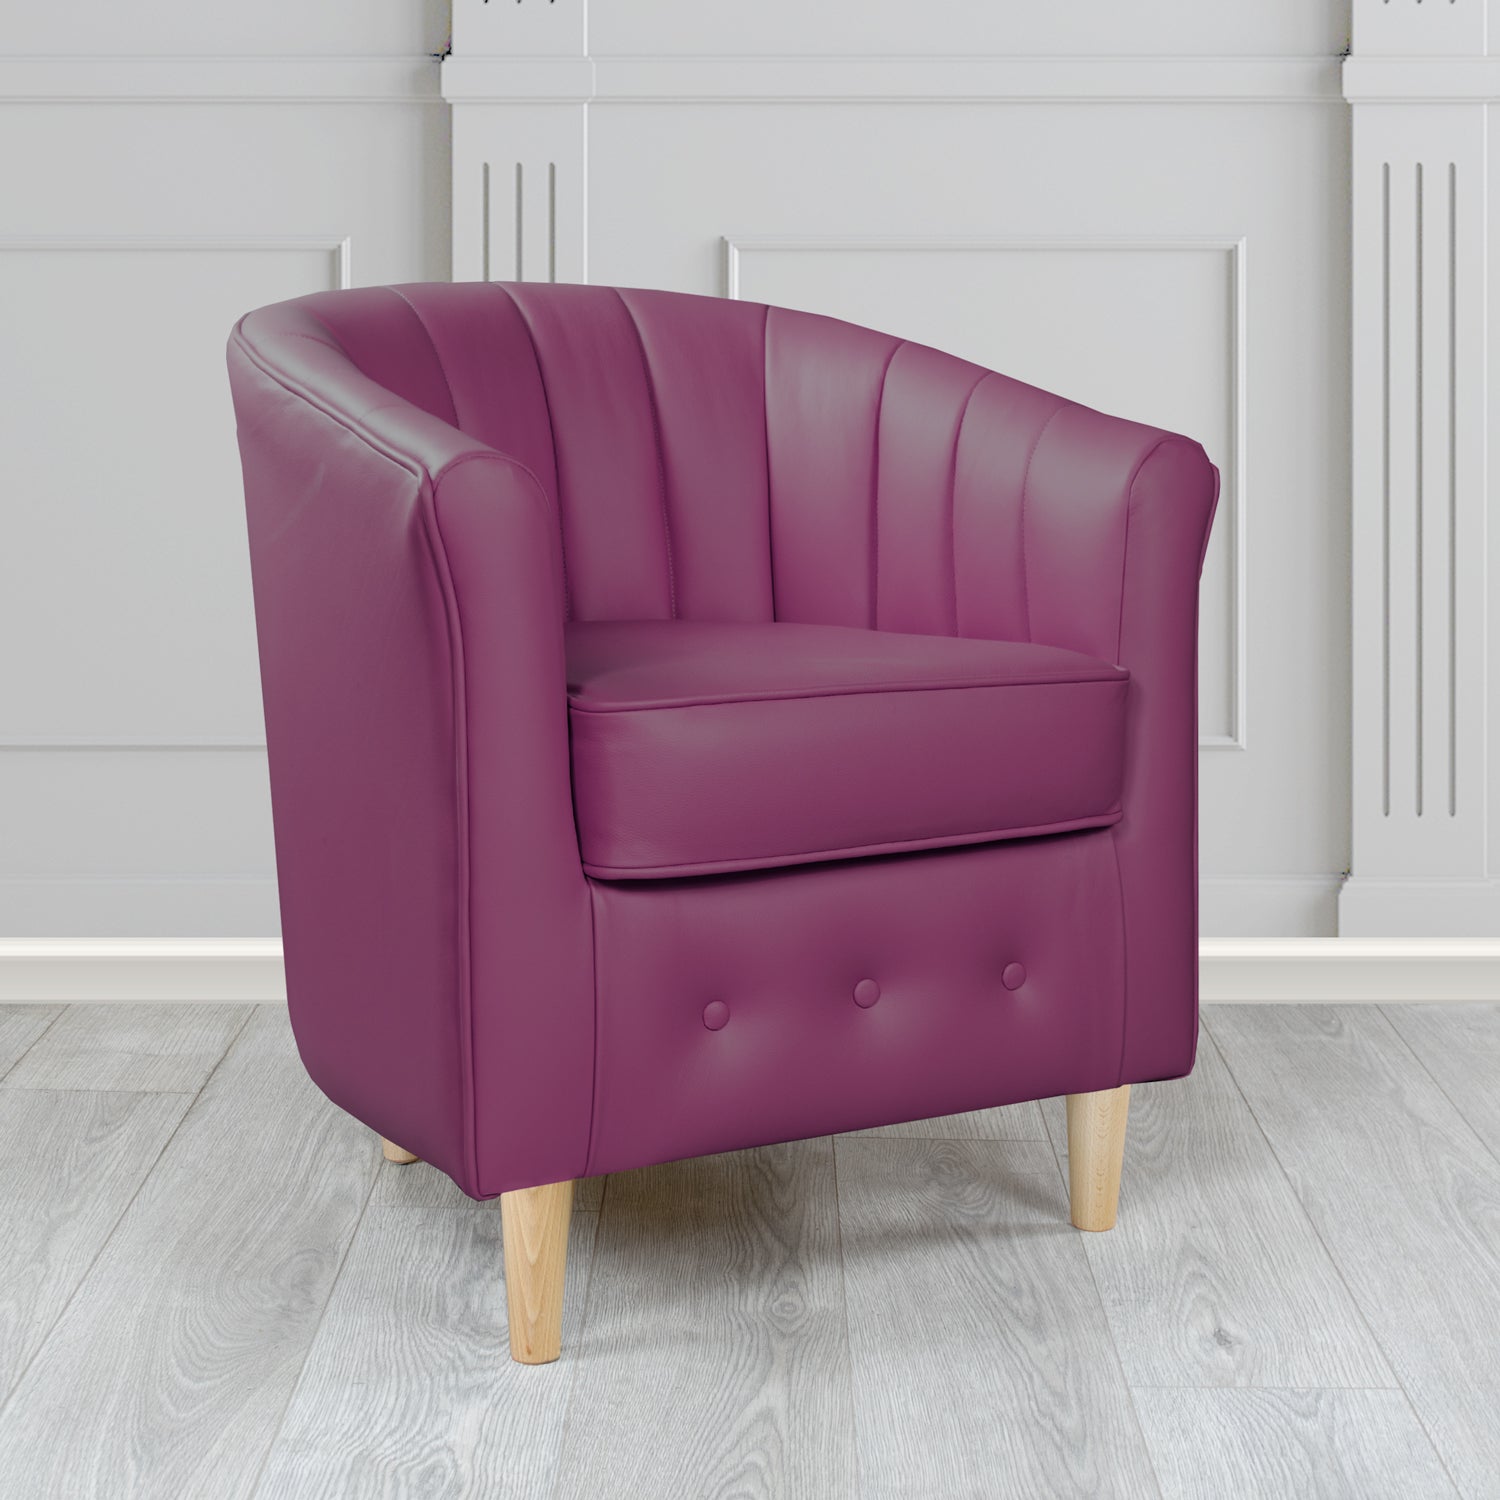 Doha Tub Chair in Vele Aubergine Crib 5 Genuine Leather